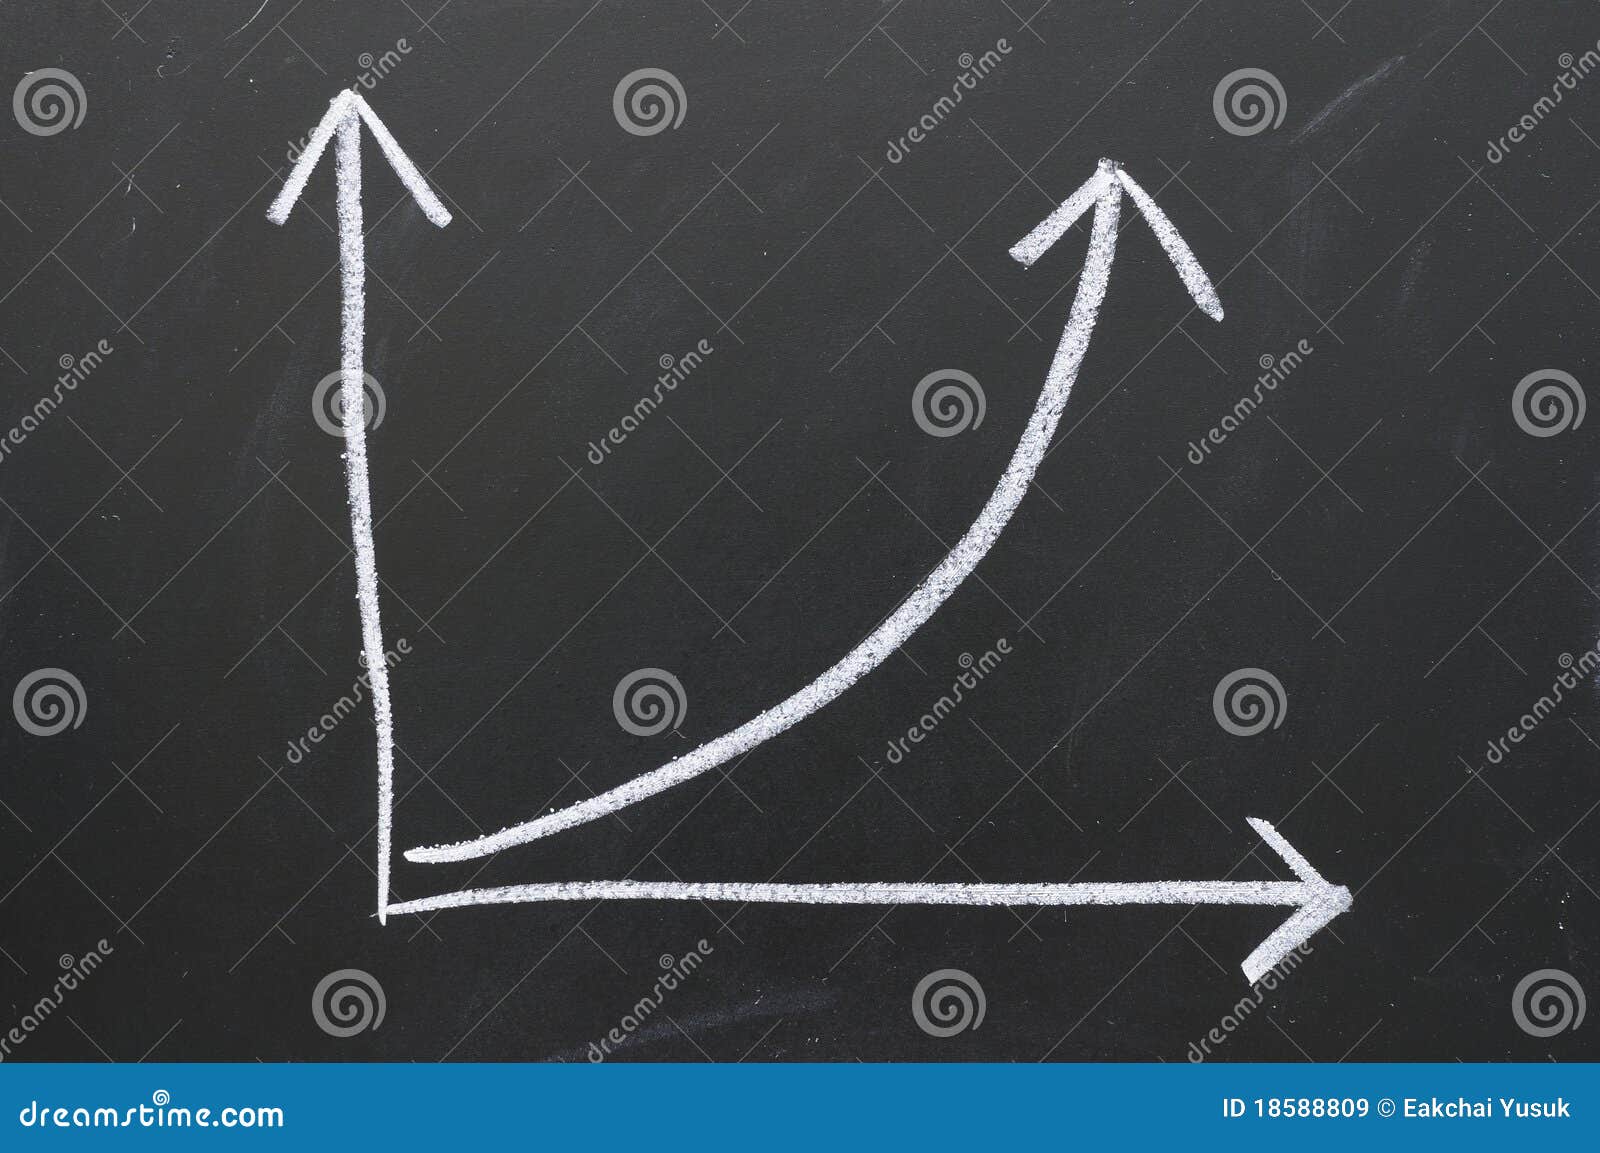 Finanzgeschäftsdiagramm auf blakcboard. Schreibenskreide-Farbendiagramm zeigt eine Zunahme des Geschäfts.